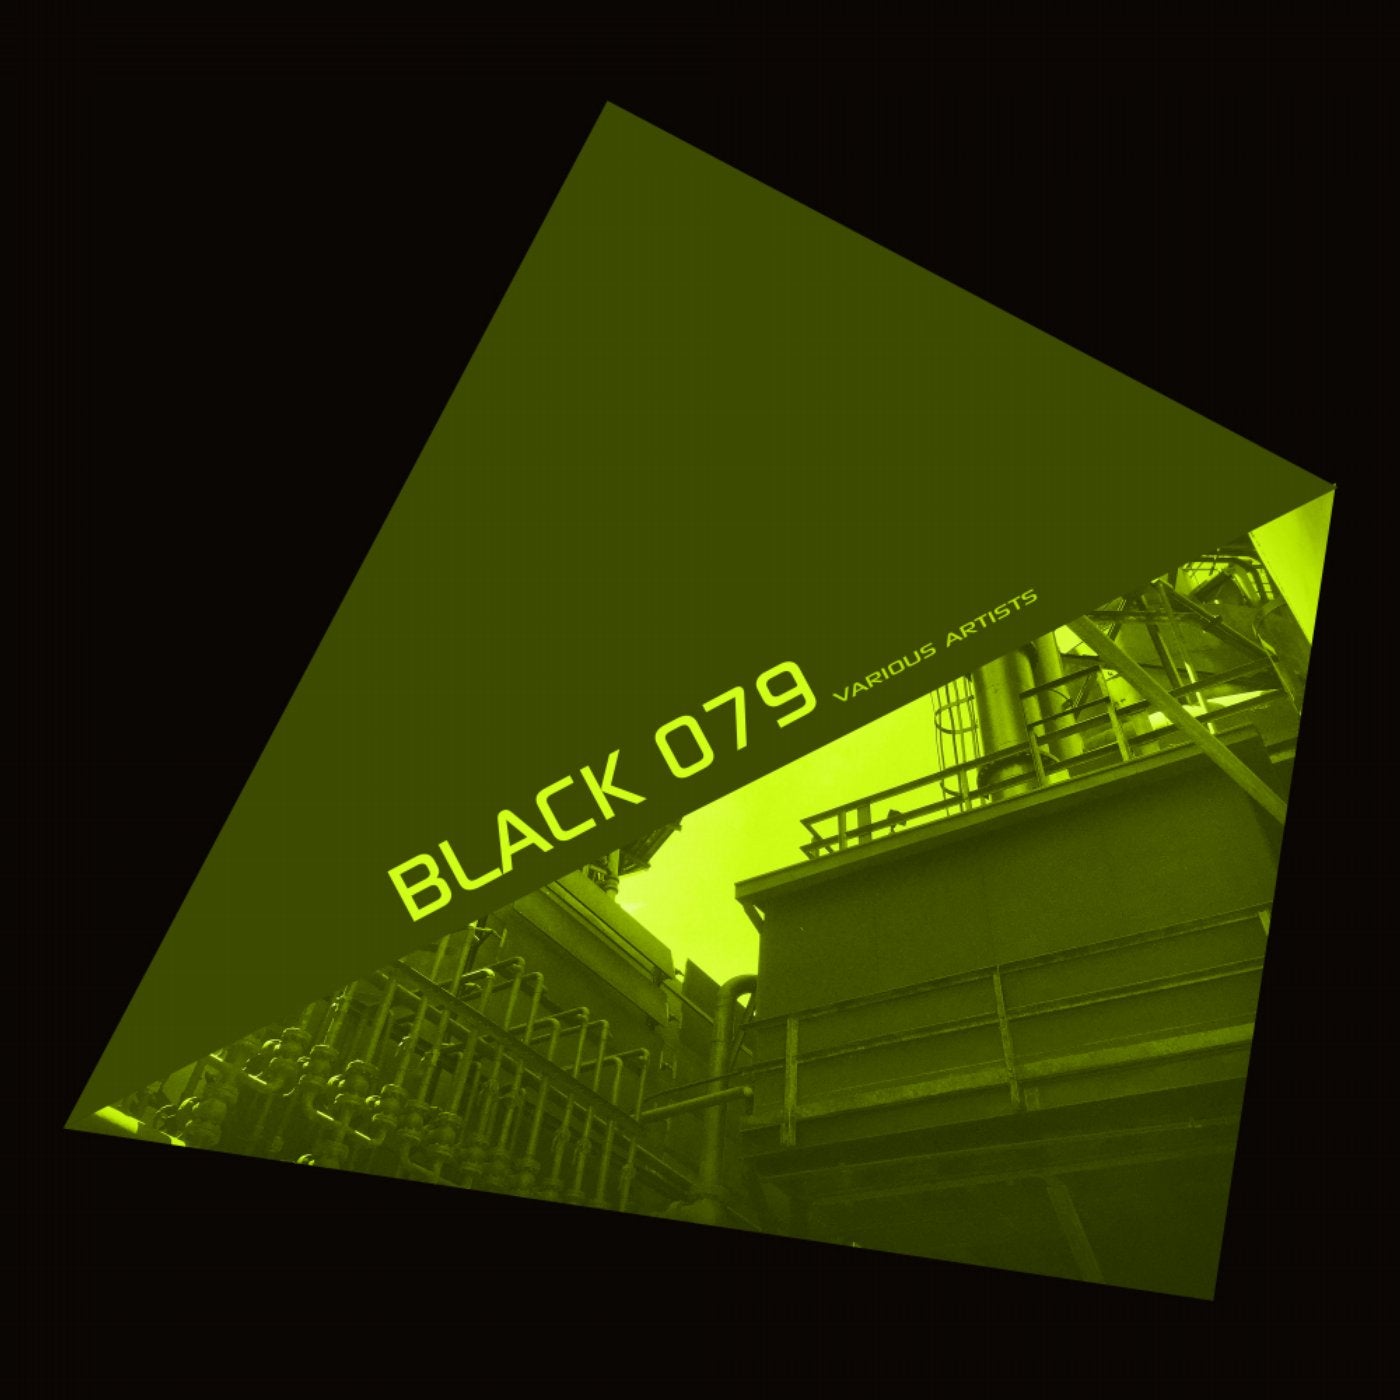 Black 079